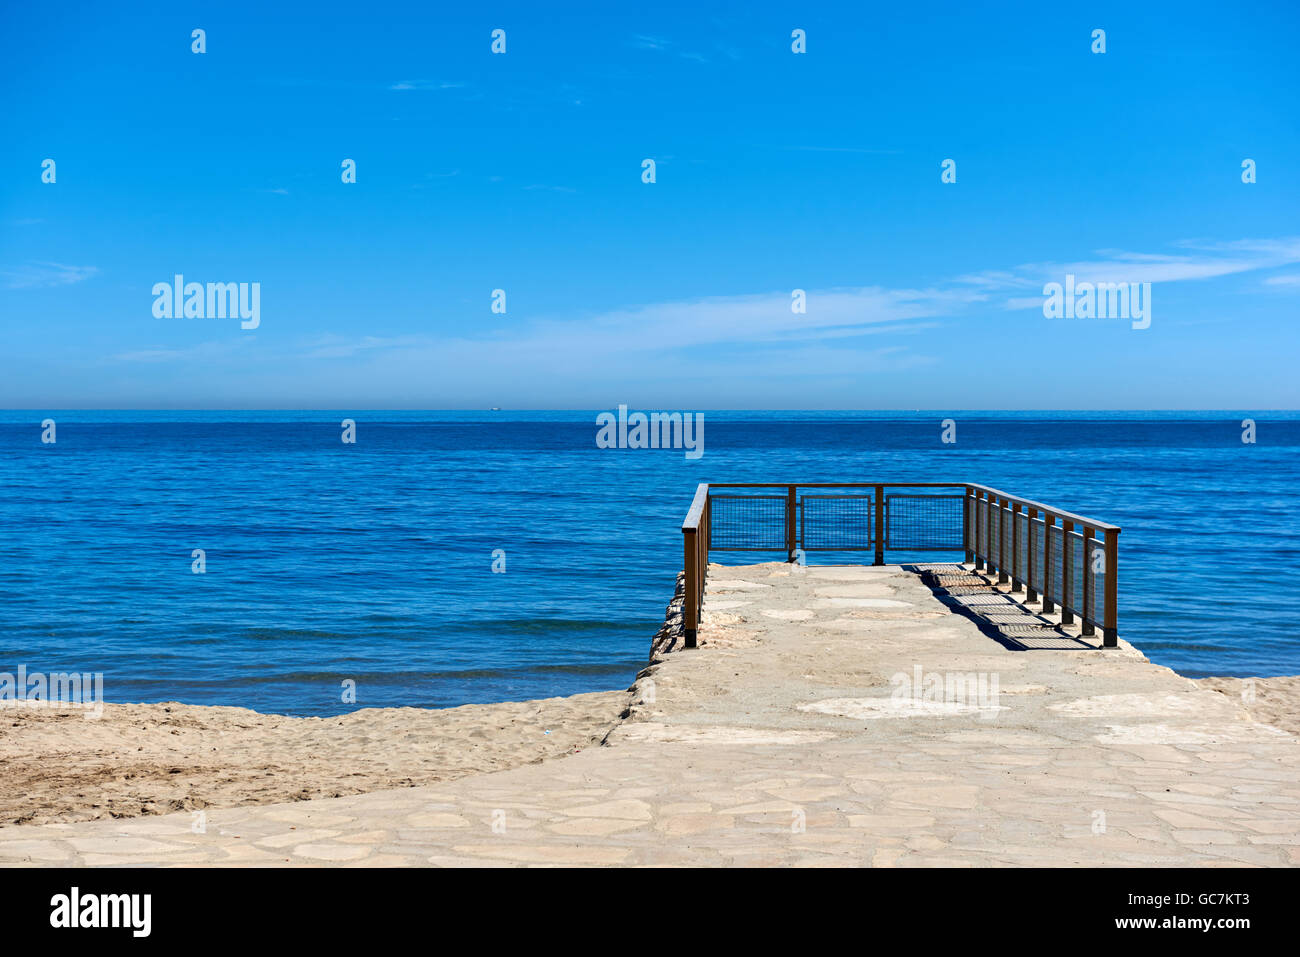 Ciel bleu et l'horizon sur la mer Méditerranée. Scène idyllique. Locations de concept Banque D'Images